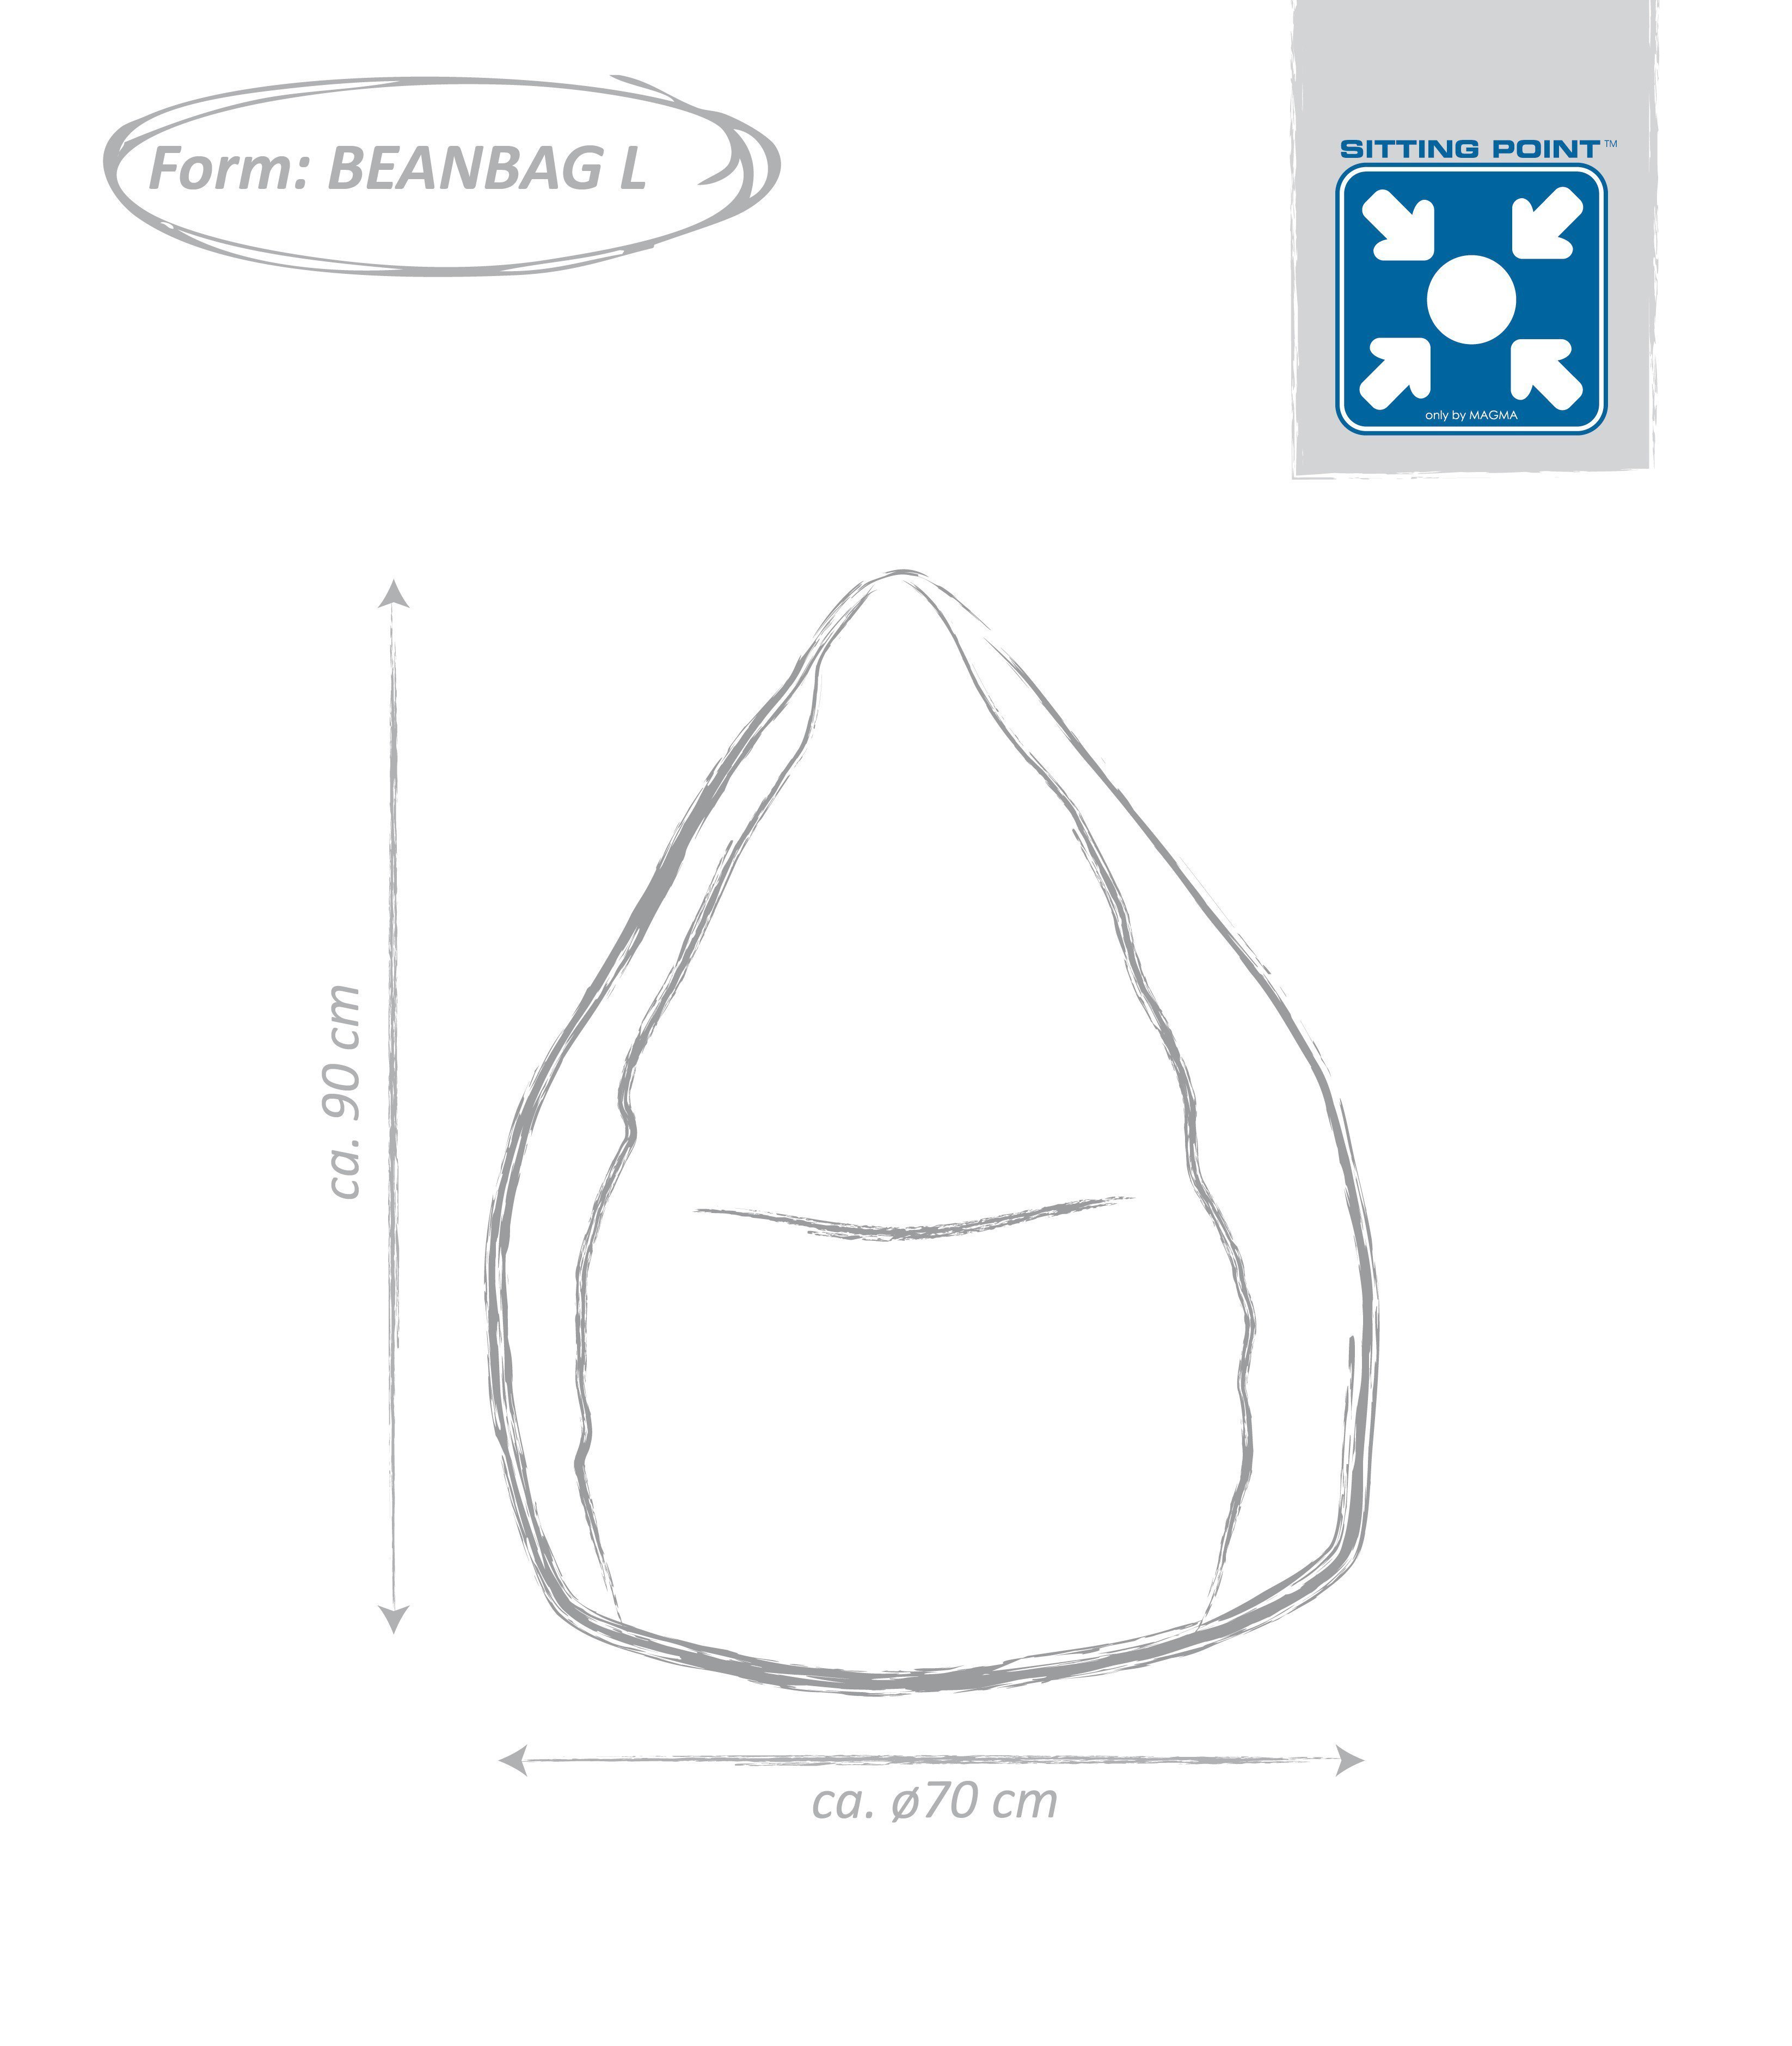 Sitzsack Beanbag Fluffy von im Ihr | Online-Shop Möbel Letz Magma - XL-Format